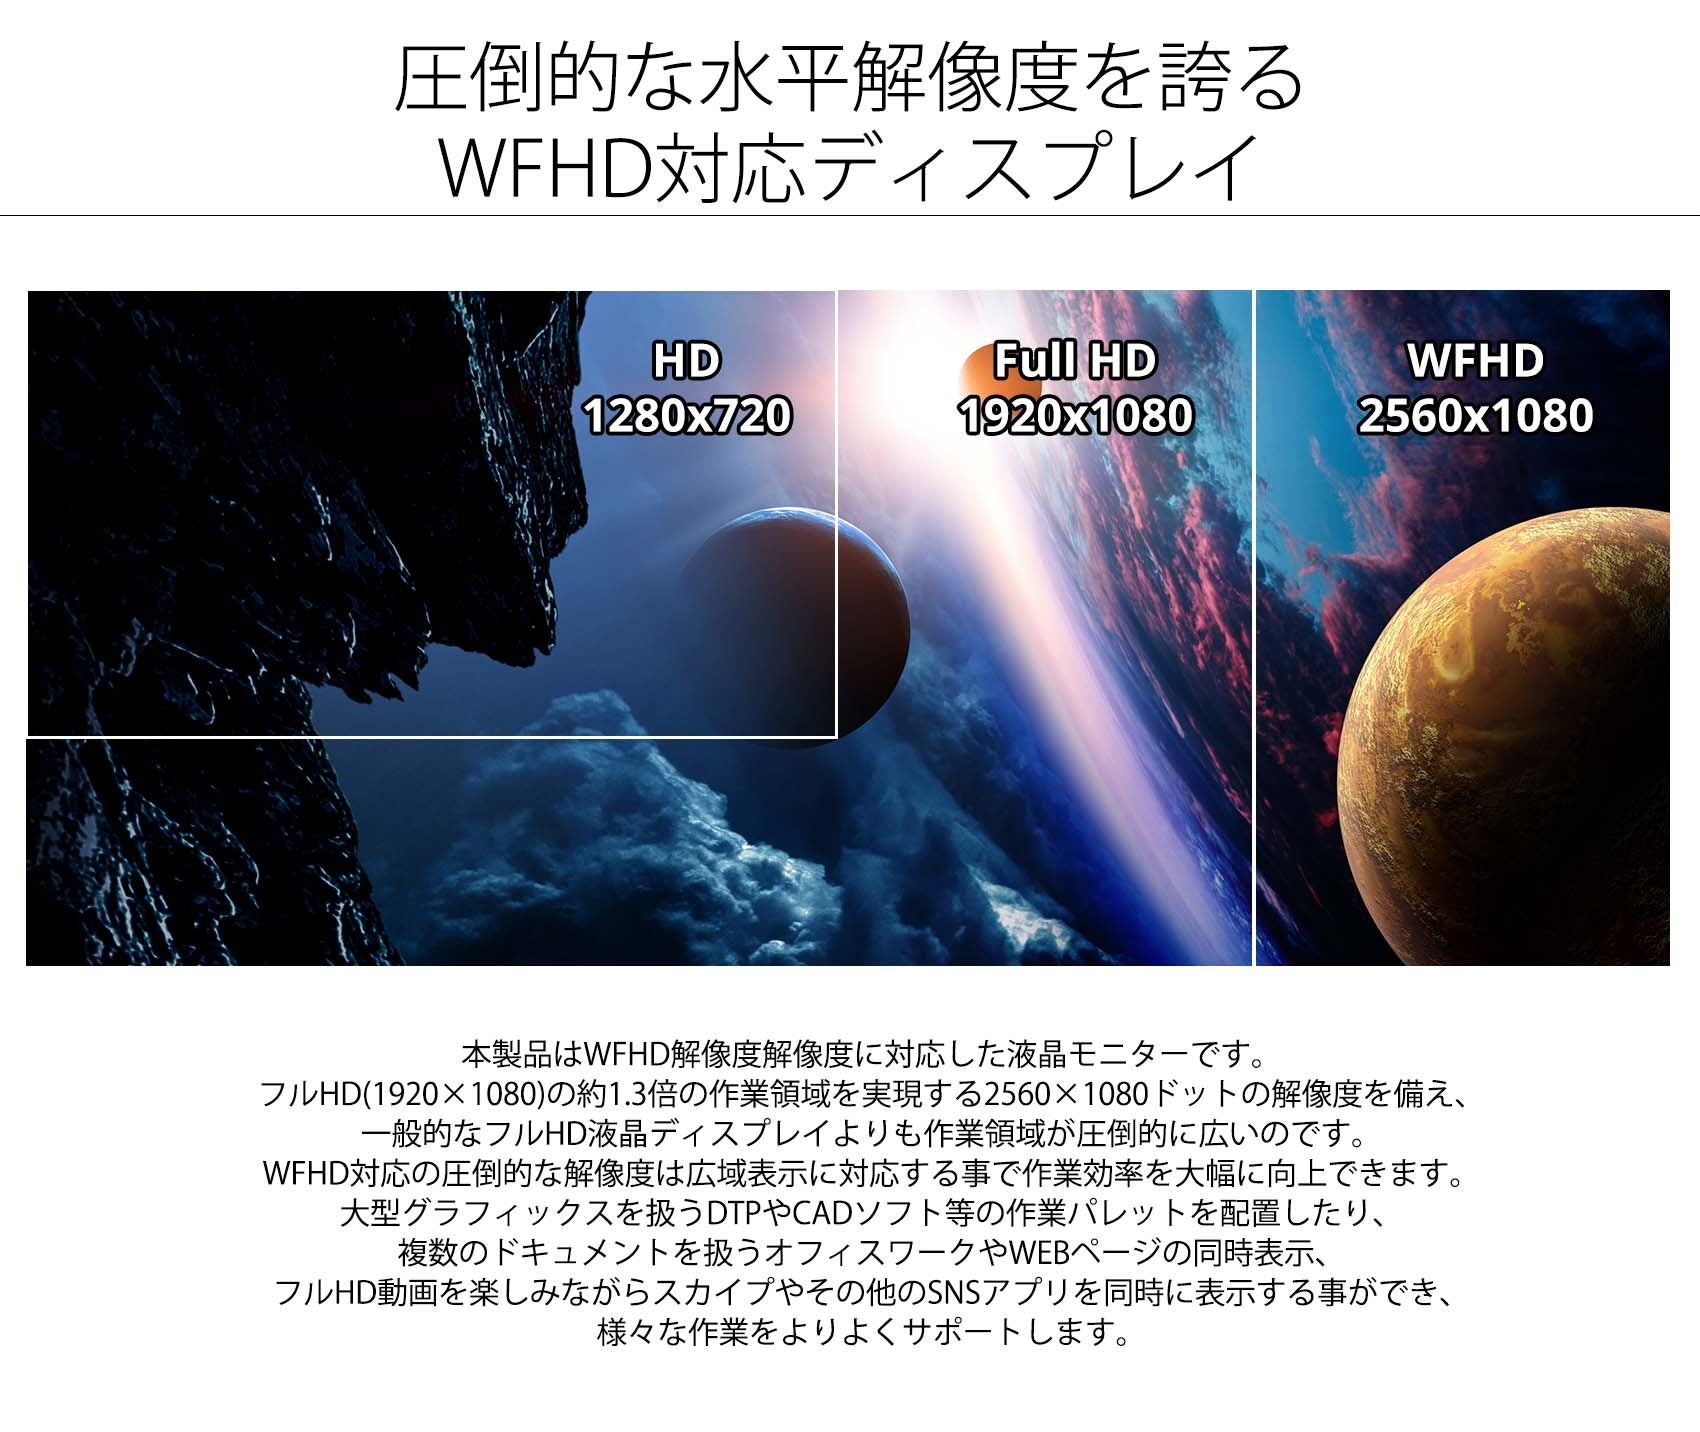 JAPANNEXT 25.7インチ ワイドFHD(2560 x 1080) 液晶モニター JN